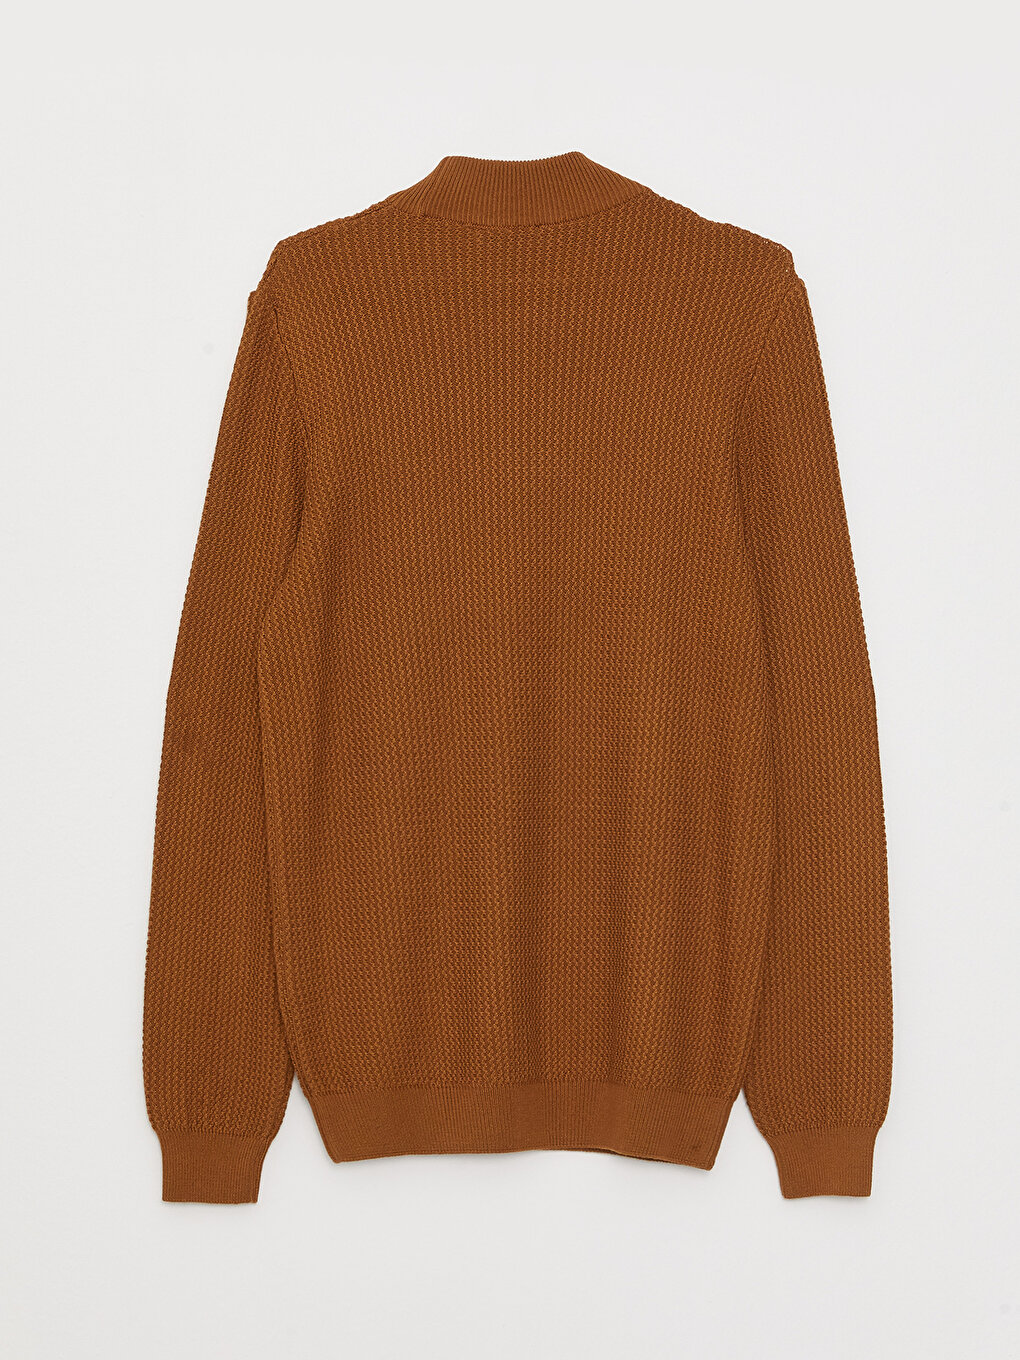 Half Turtleneck Long Sleeve Men's Tricot Sweater -W2CG07Z8-SMT ...